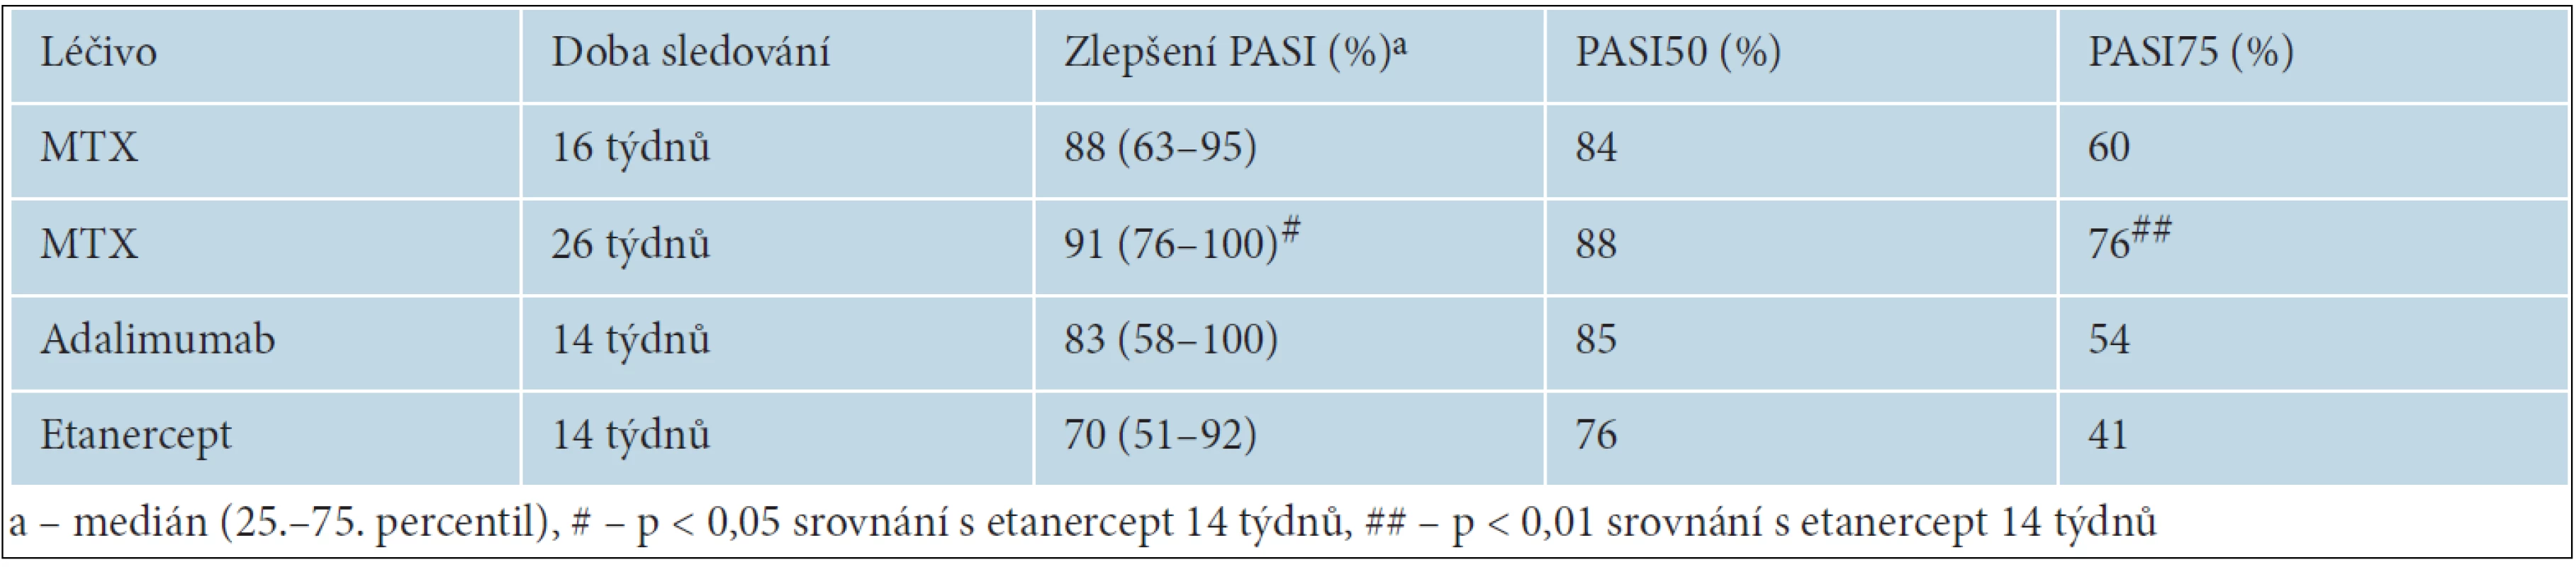 změny skóre PASI (the Psoriasis Area and Severity Index) a procenta nemocných, u kterých se PASI snížilo o ≥ 50 % (PASI50) a 70 % (PASI70)